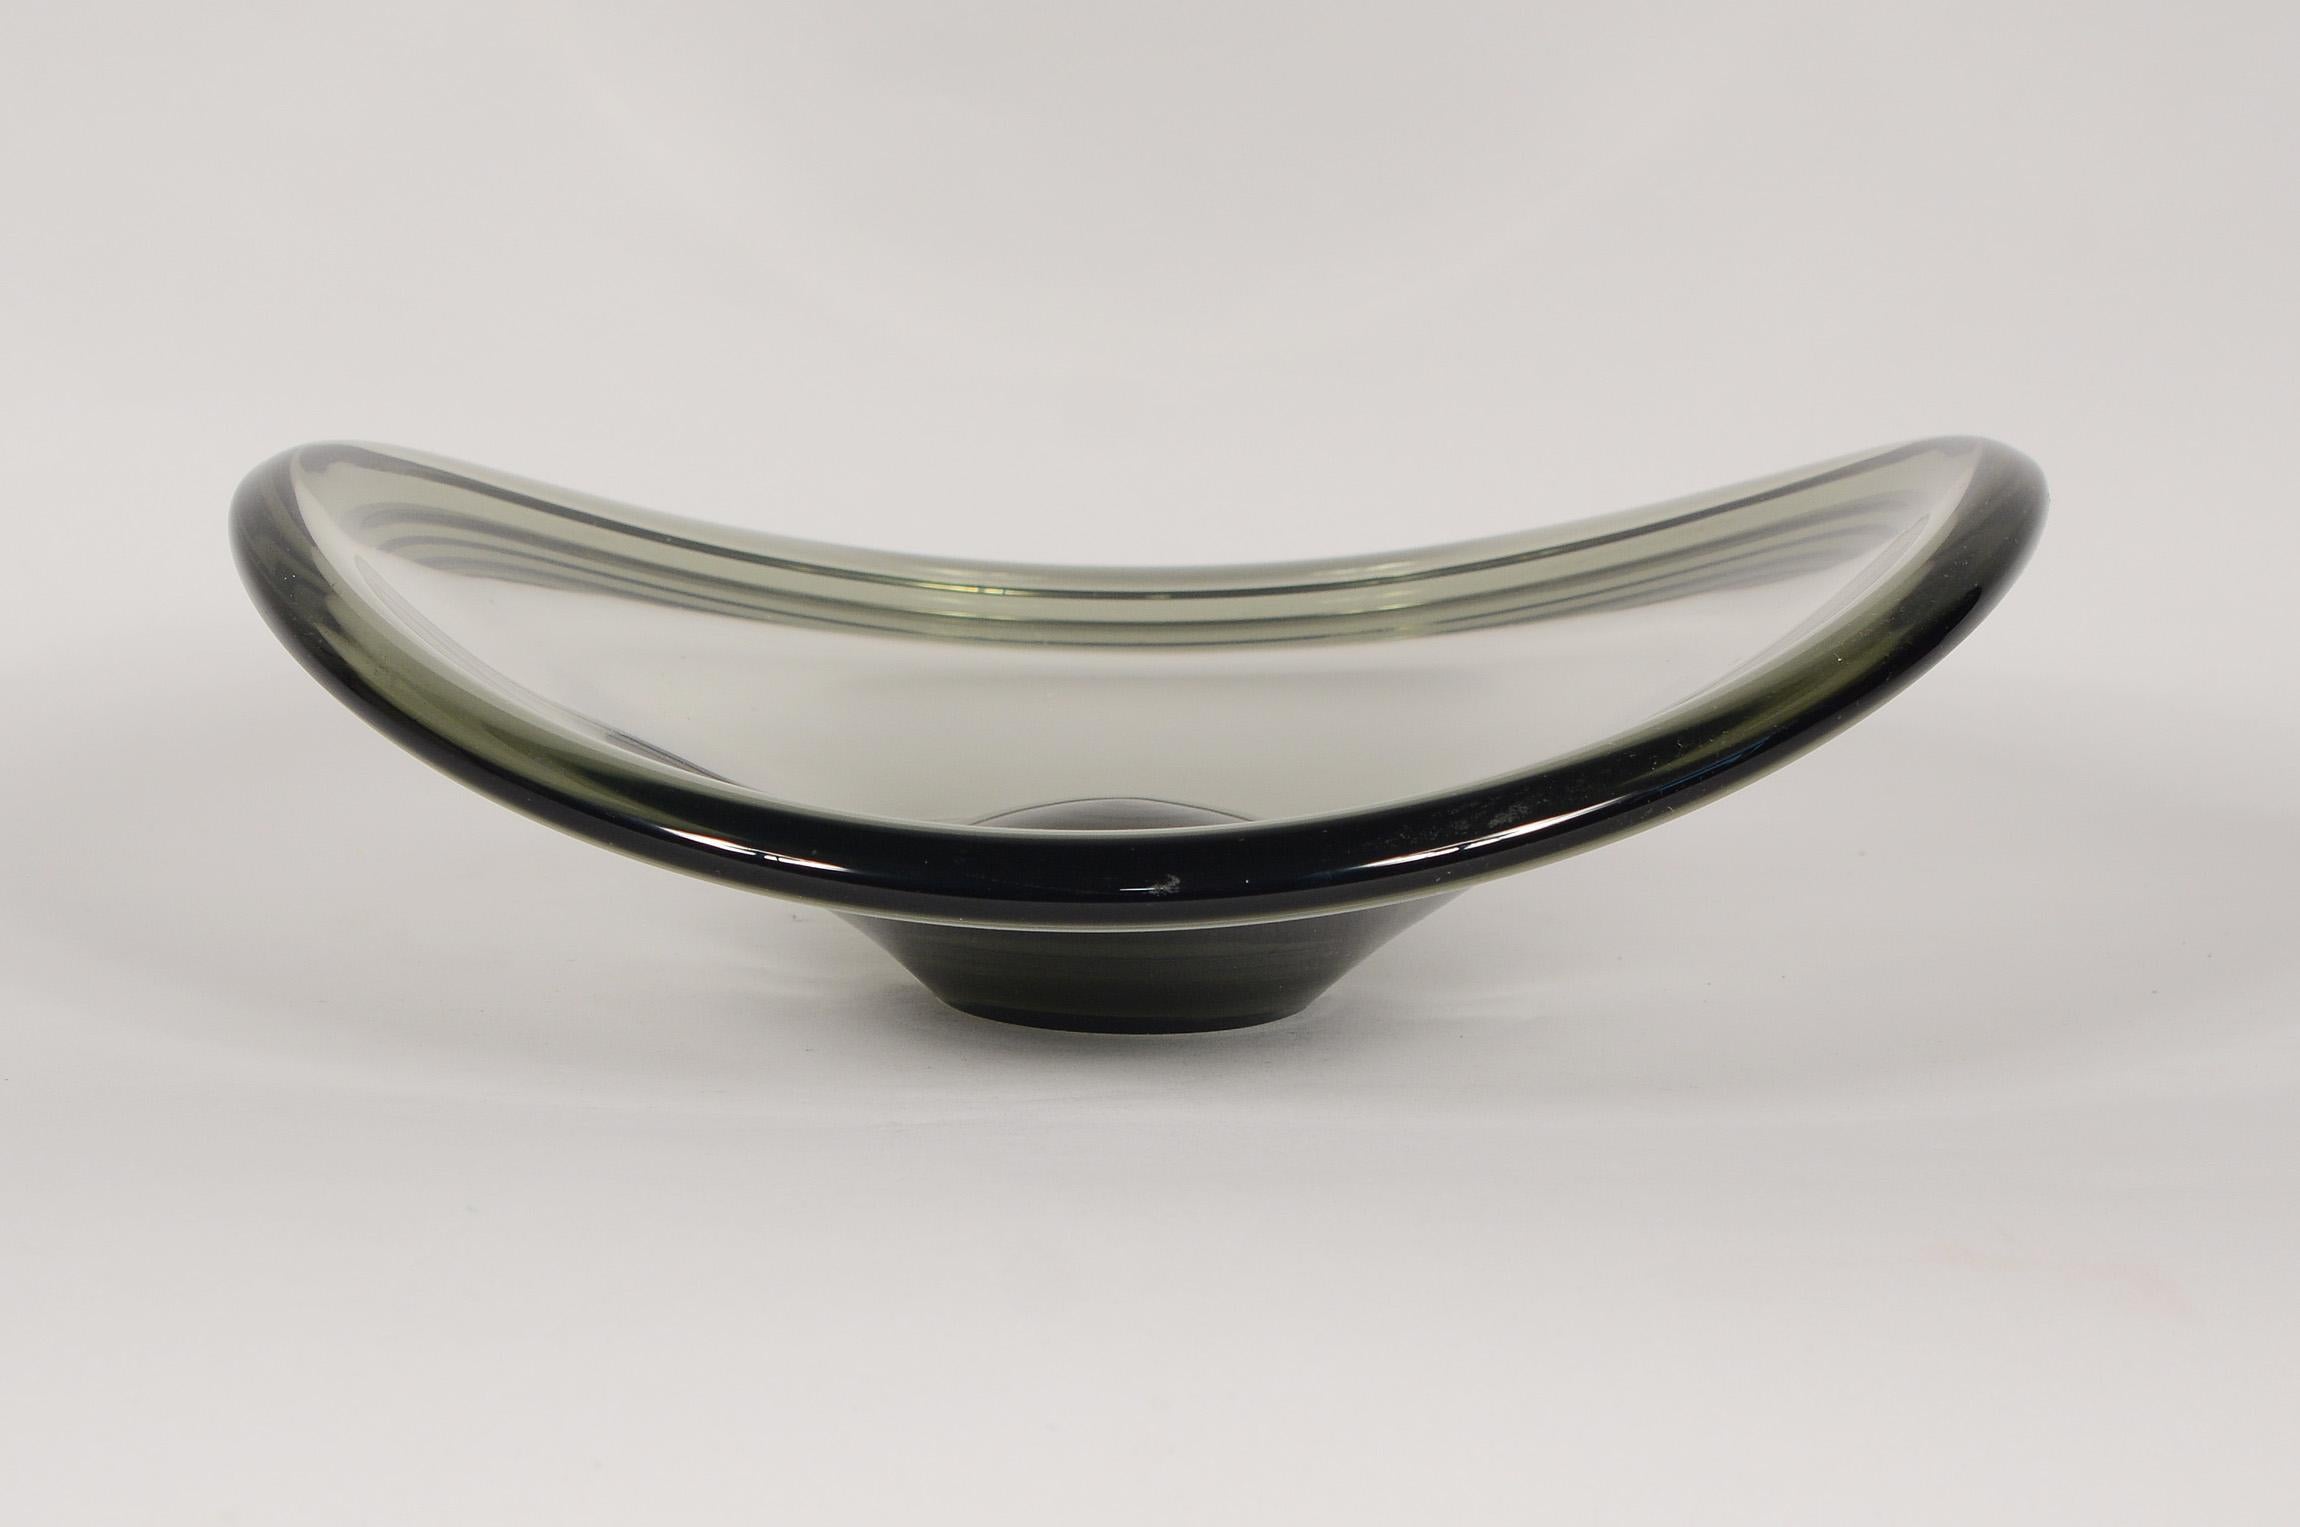 Räucherglas mit niedriger Schale, entworfen von Per Lutken für Holmegaard. Die Schale ist auf 1961 datiert.